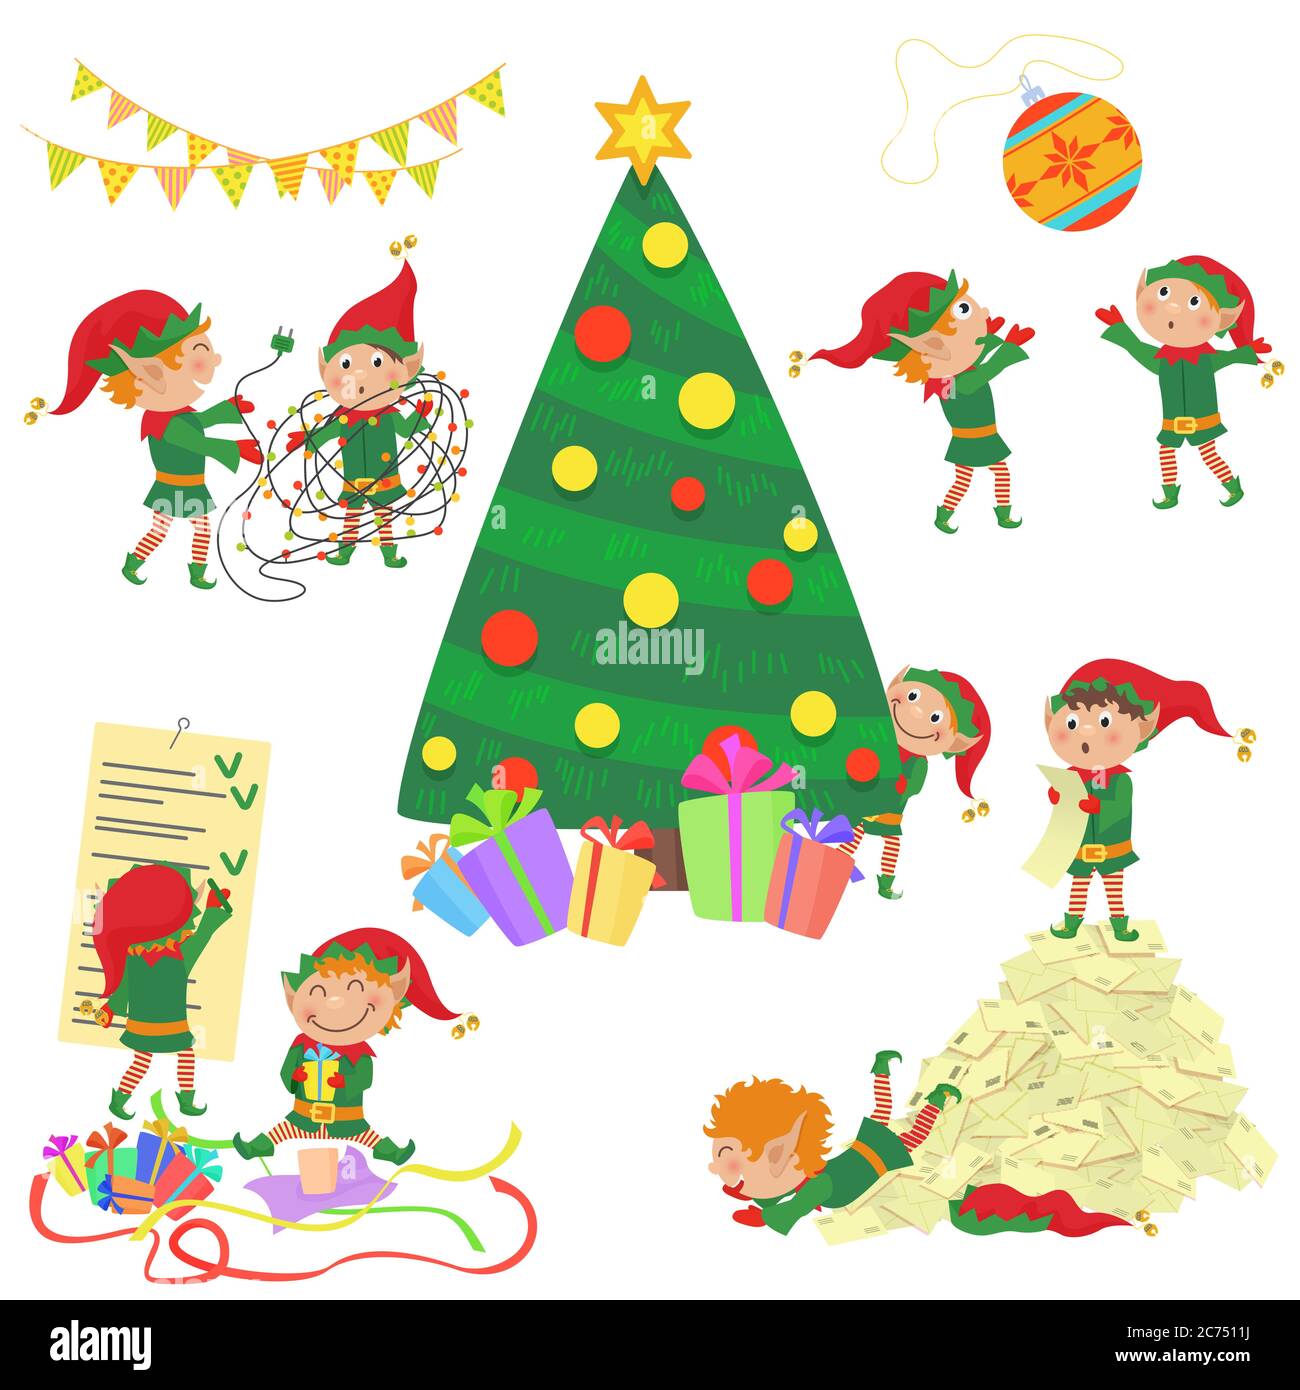 Vektor-Illustration von kleinen niedlichen Elfen Dekoration Weihnachtsbaum. Stock Vektor